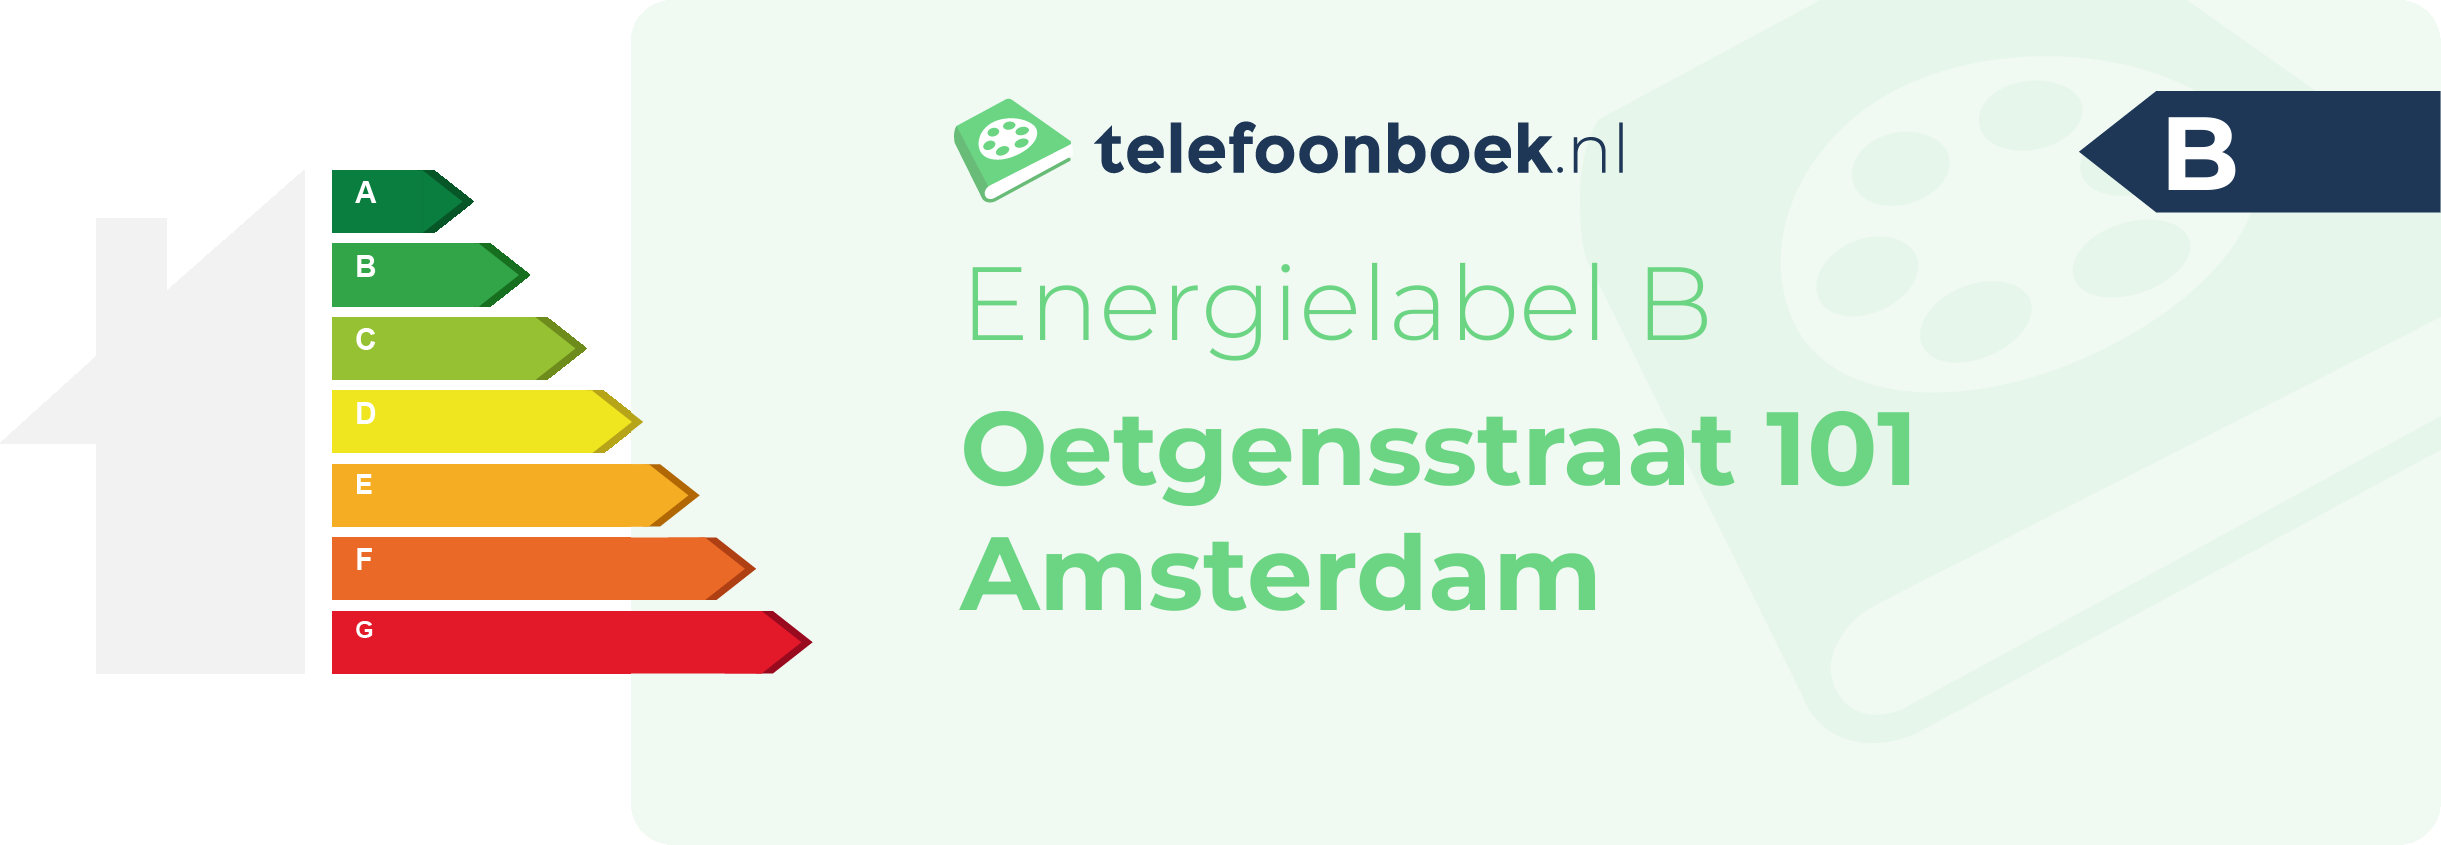 Energielabel Oetgensstraat 101 Amsterdam